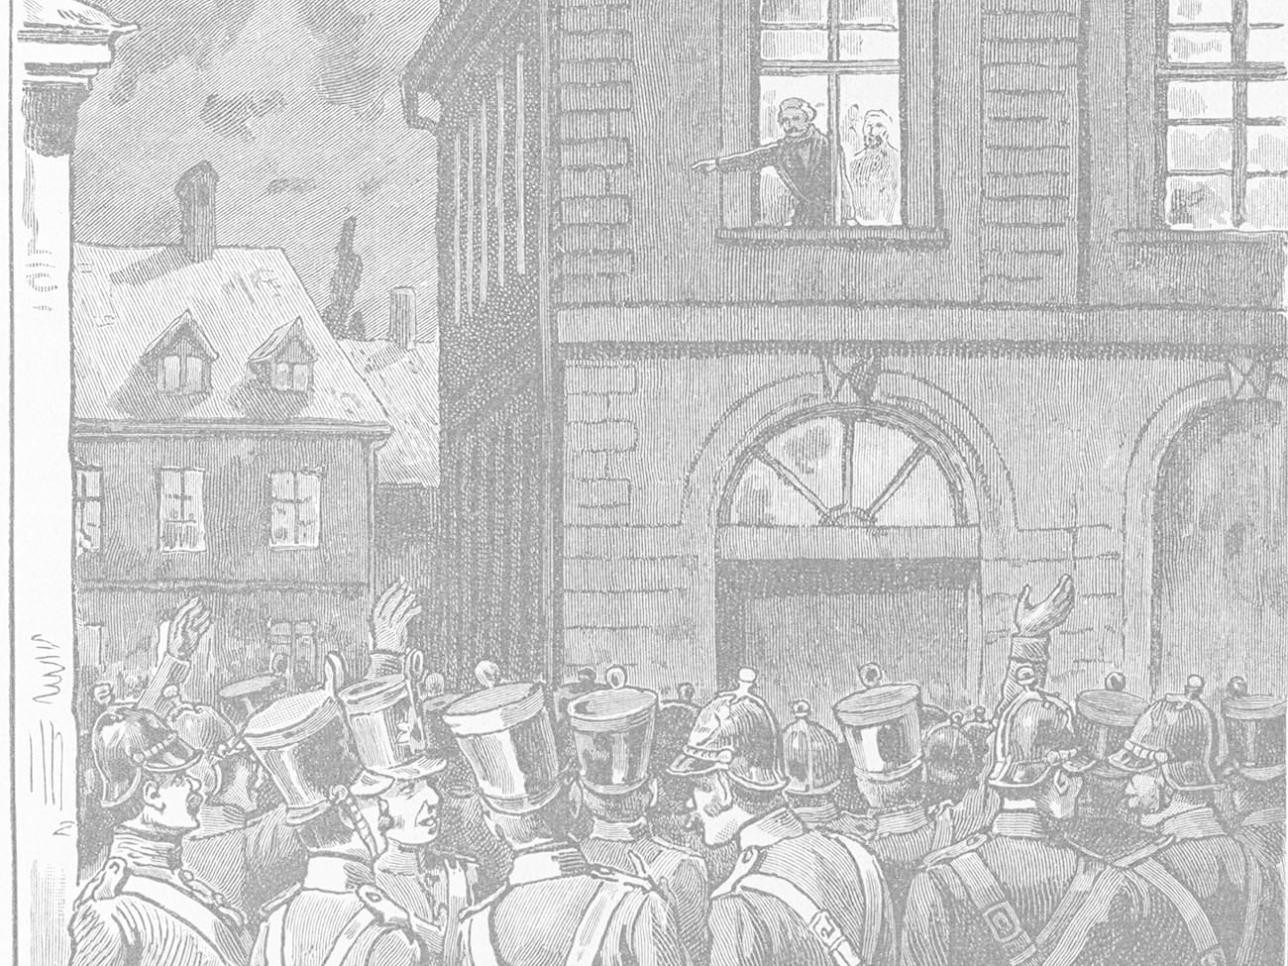 Der badische Revolutionär Amand Goegg verkündet am 13. Mai 1849 aus einem Fenster des Rastatter Rathauses die Offenburger Beschlüsse 